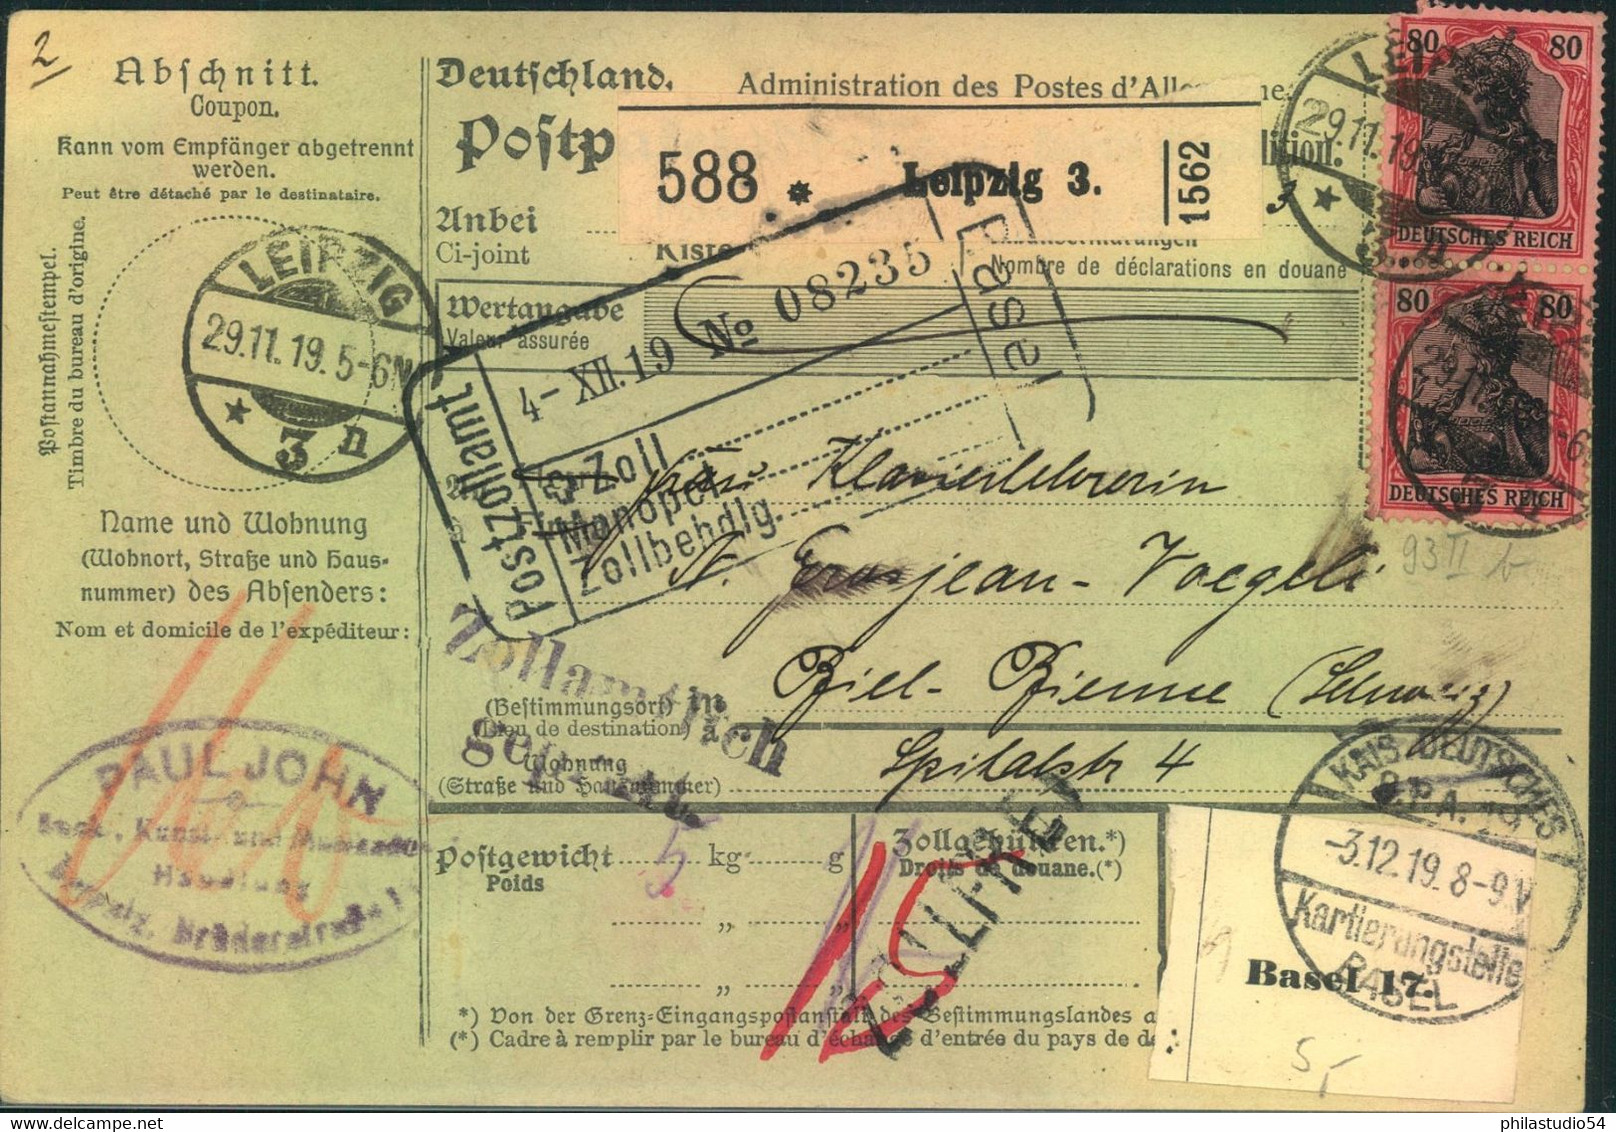 1919, 80 Pfg. Germania Im Senkrechten Paar Auf Paletkarte Ab LEIPZIG 3 In Die Schweiz - Covers & Documents